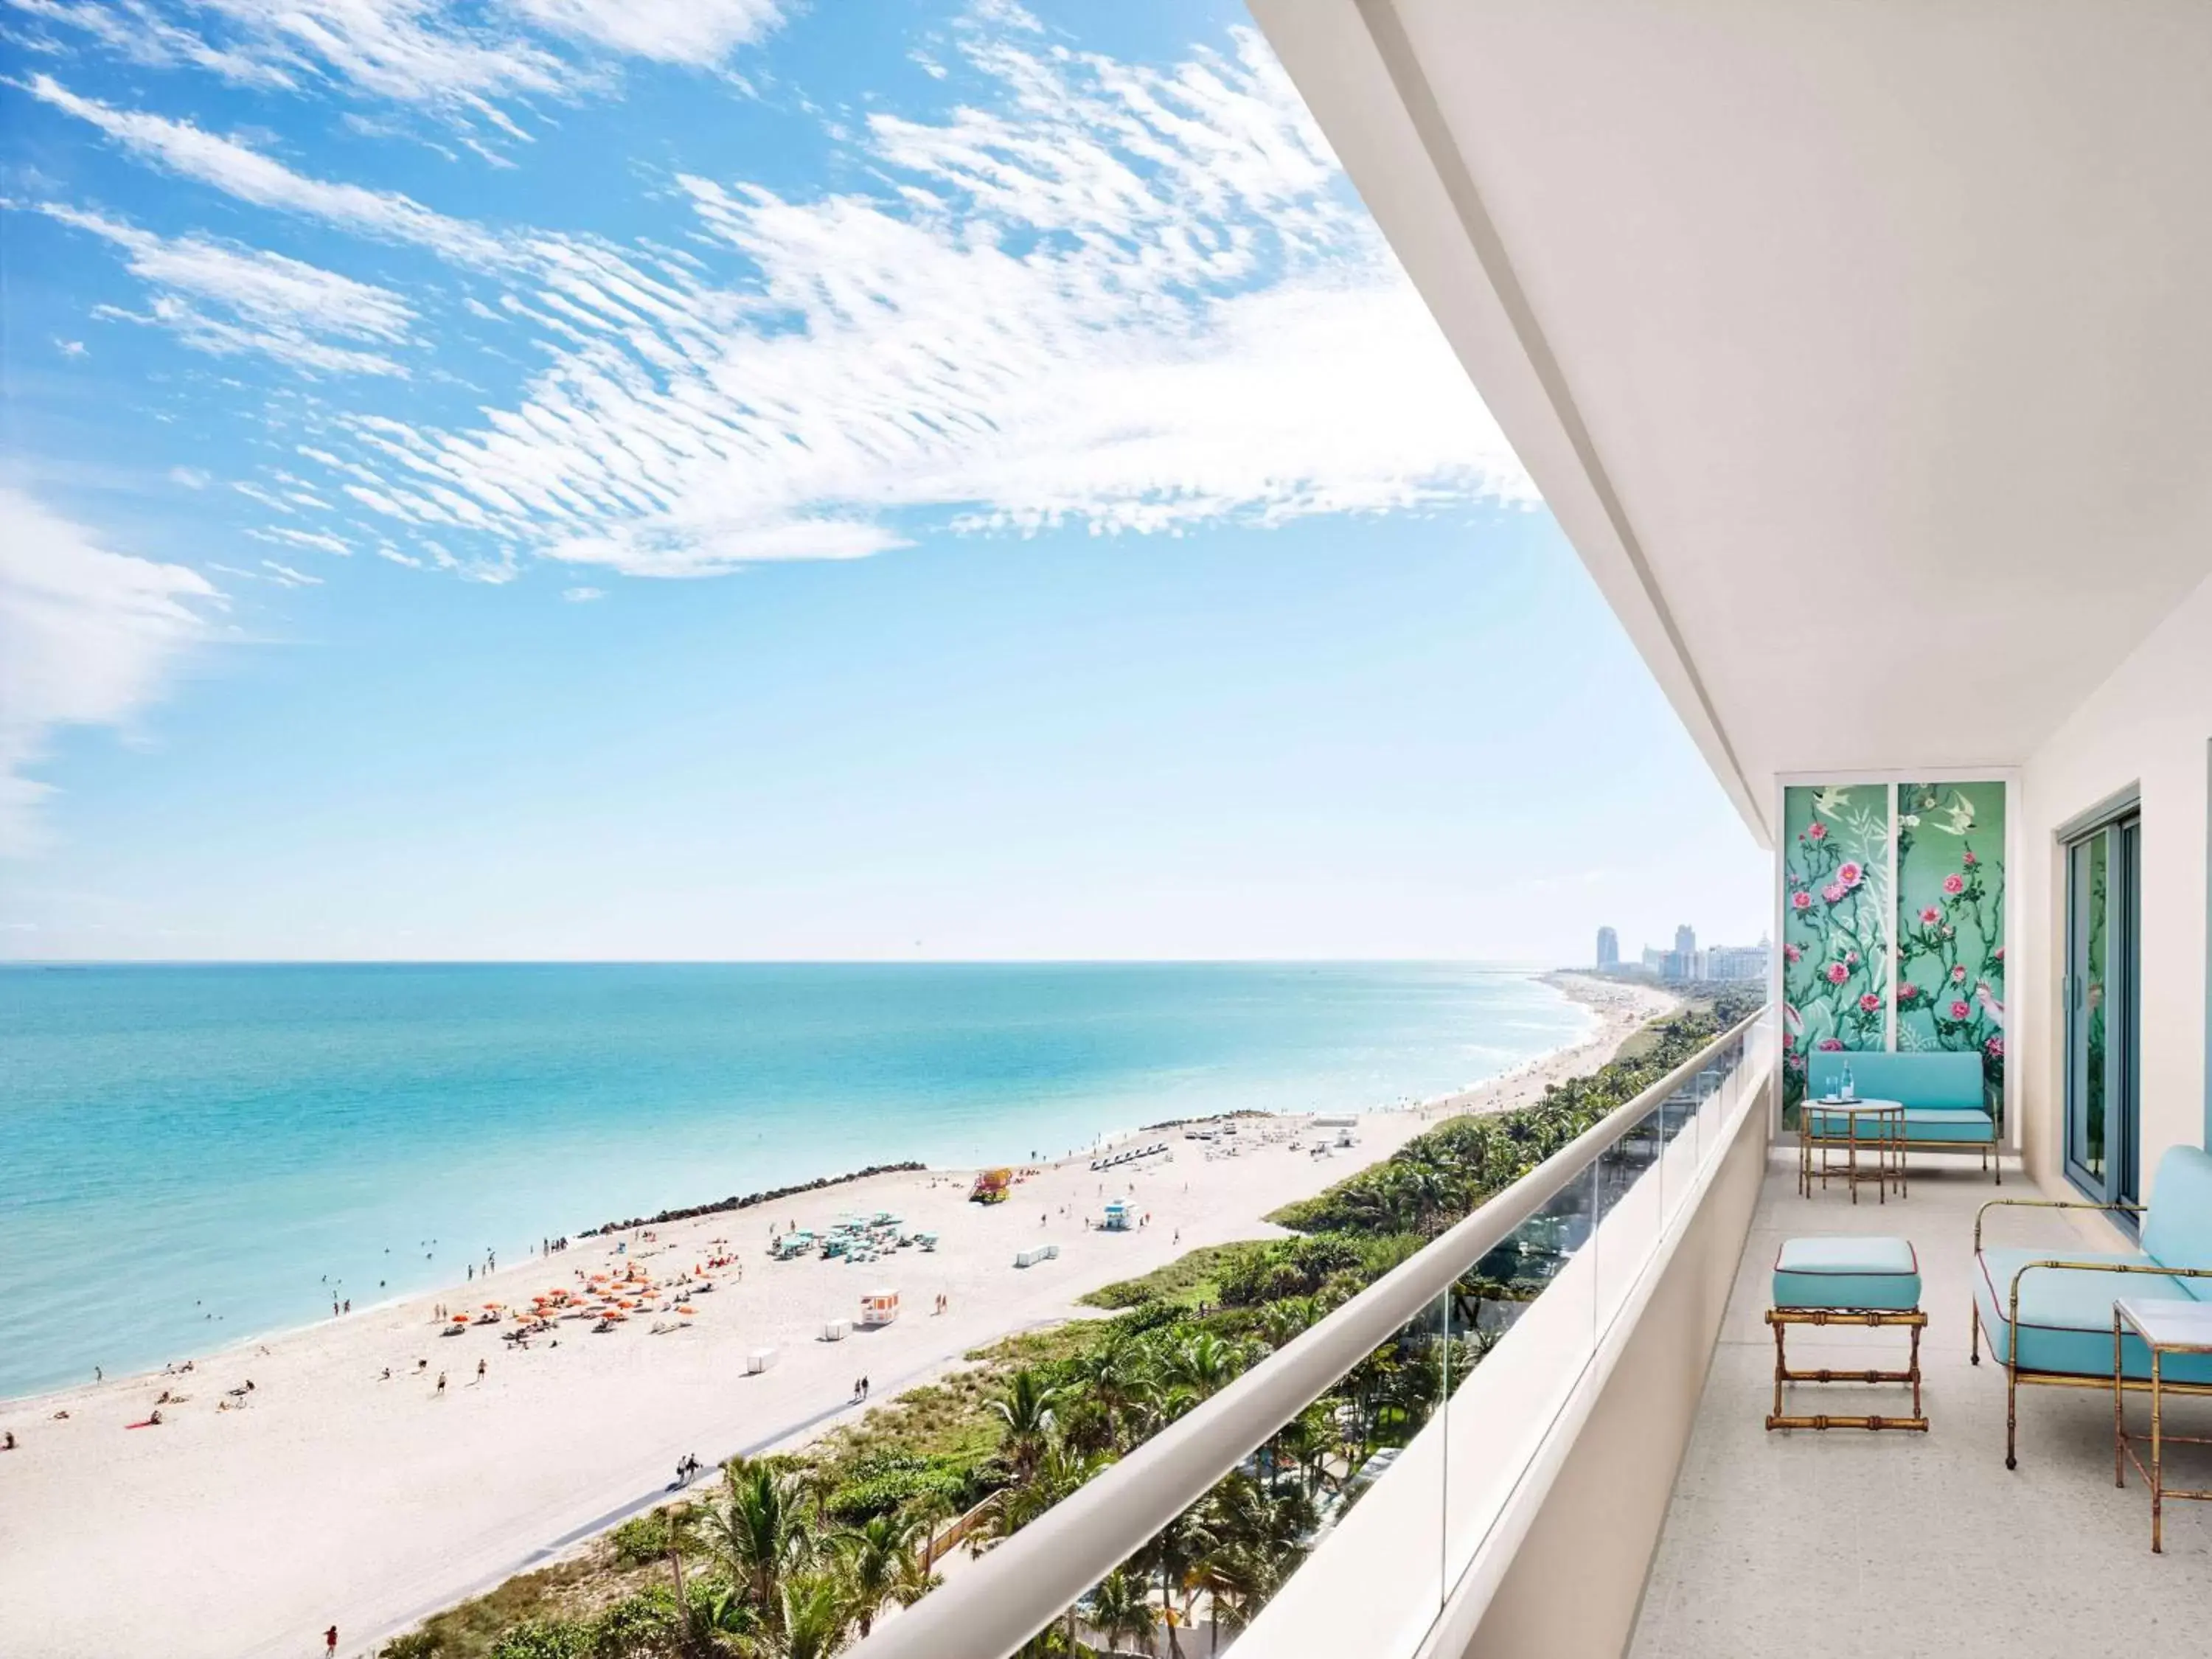 Property building, Sea View in Faena Hotel Miami Beach